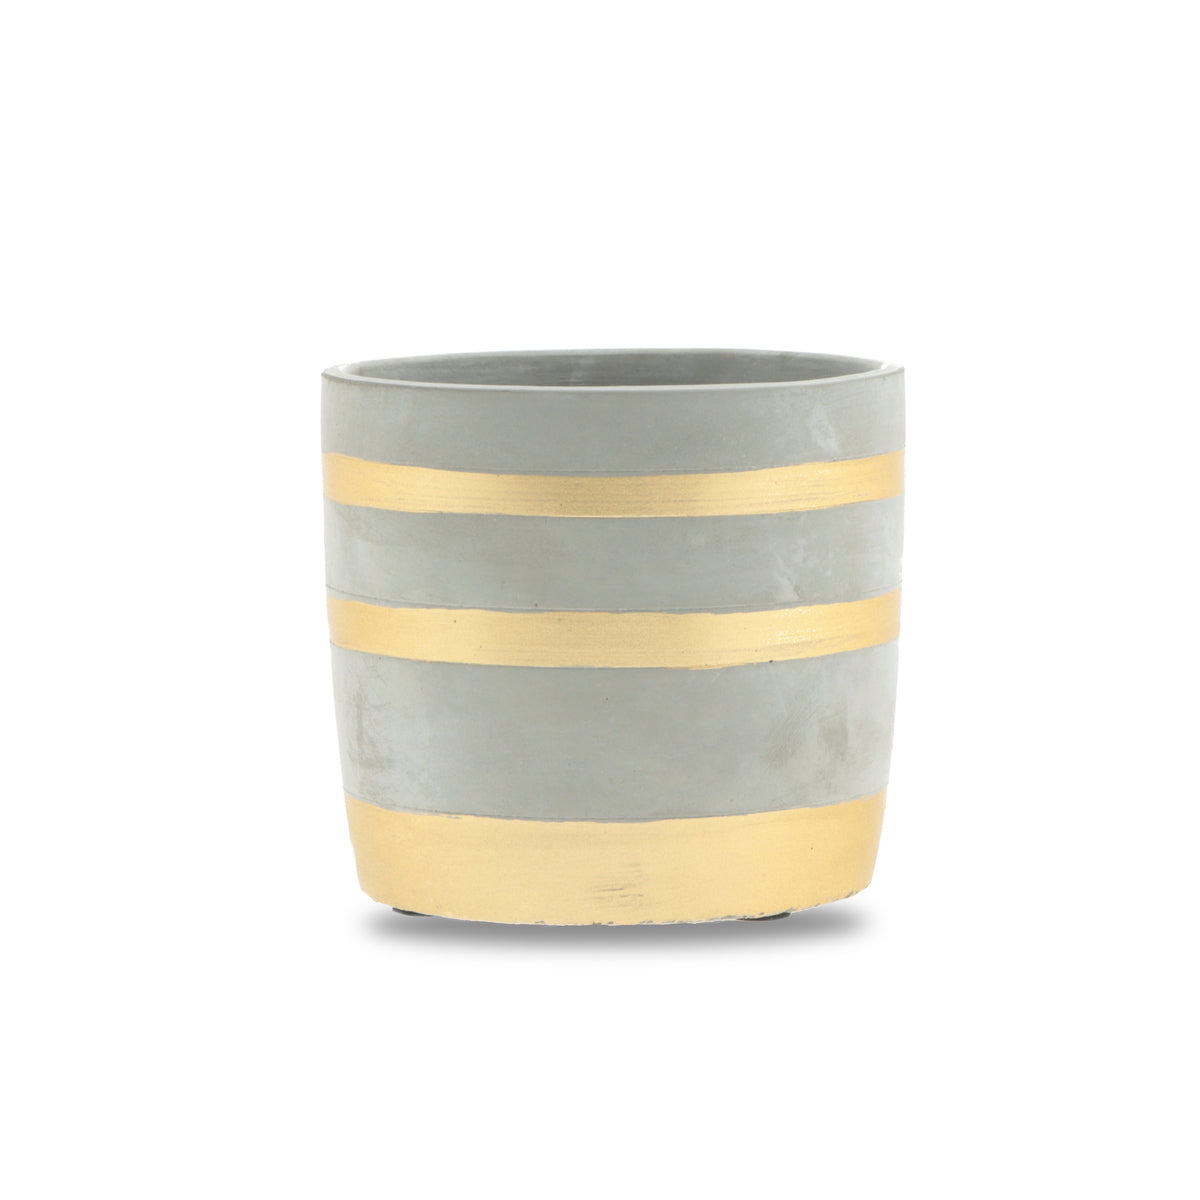 1x Concrete Pot - Gold Striped